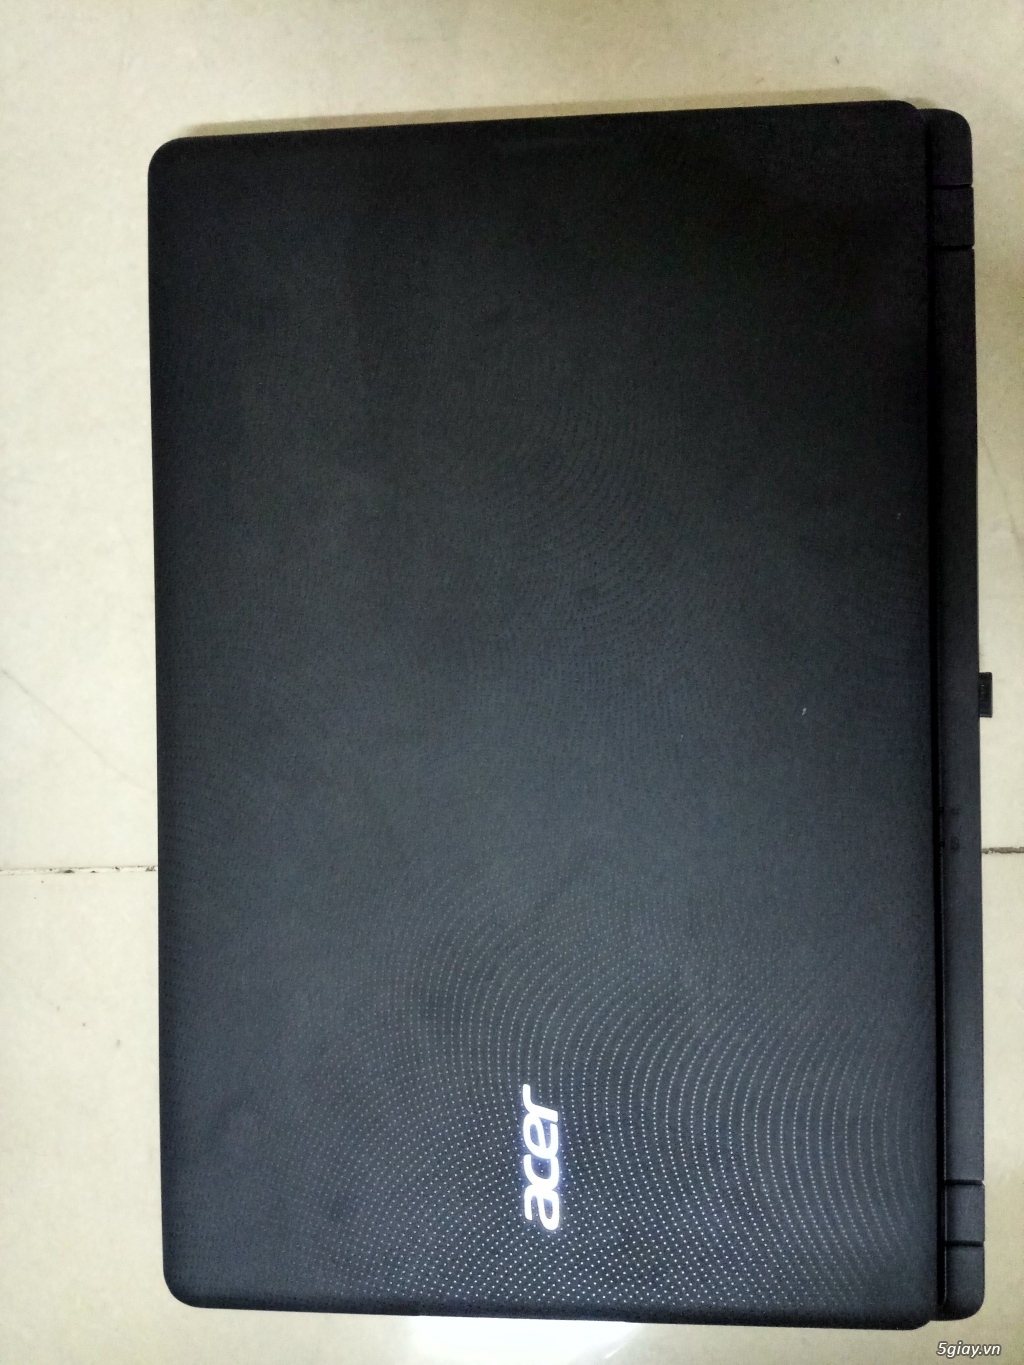 Bán Laptop Acer ES1 533 c5ts màn hình 15.6 inches giá mềm.... - 4